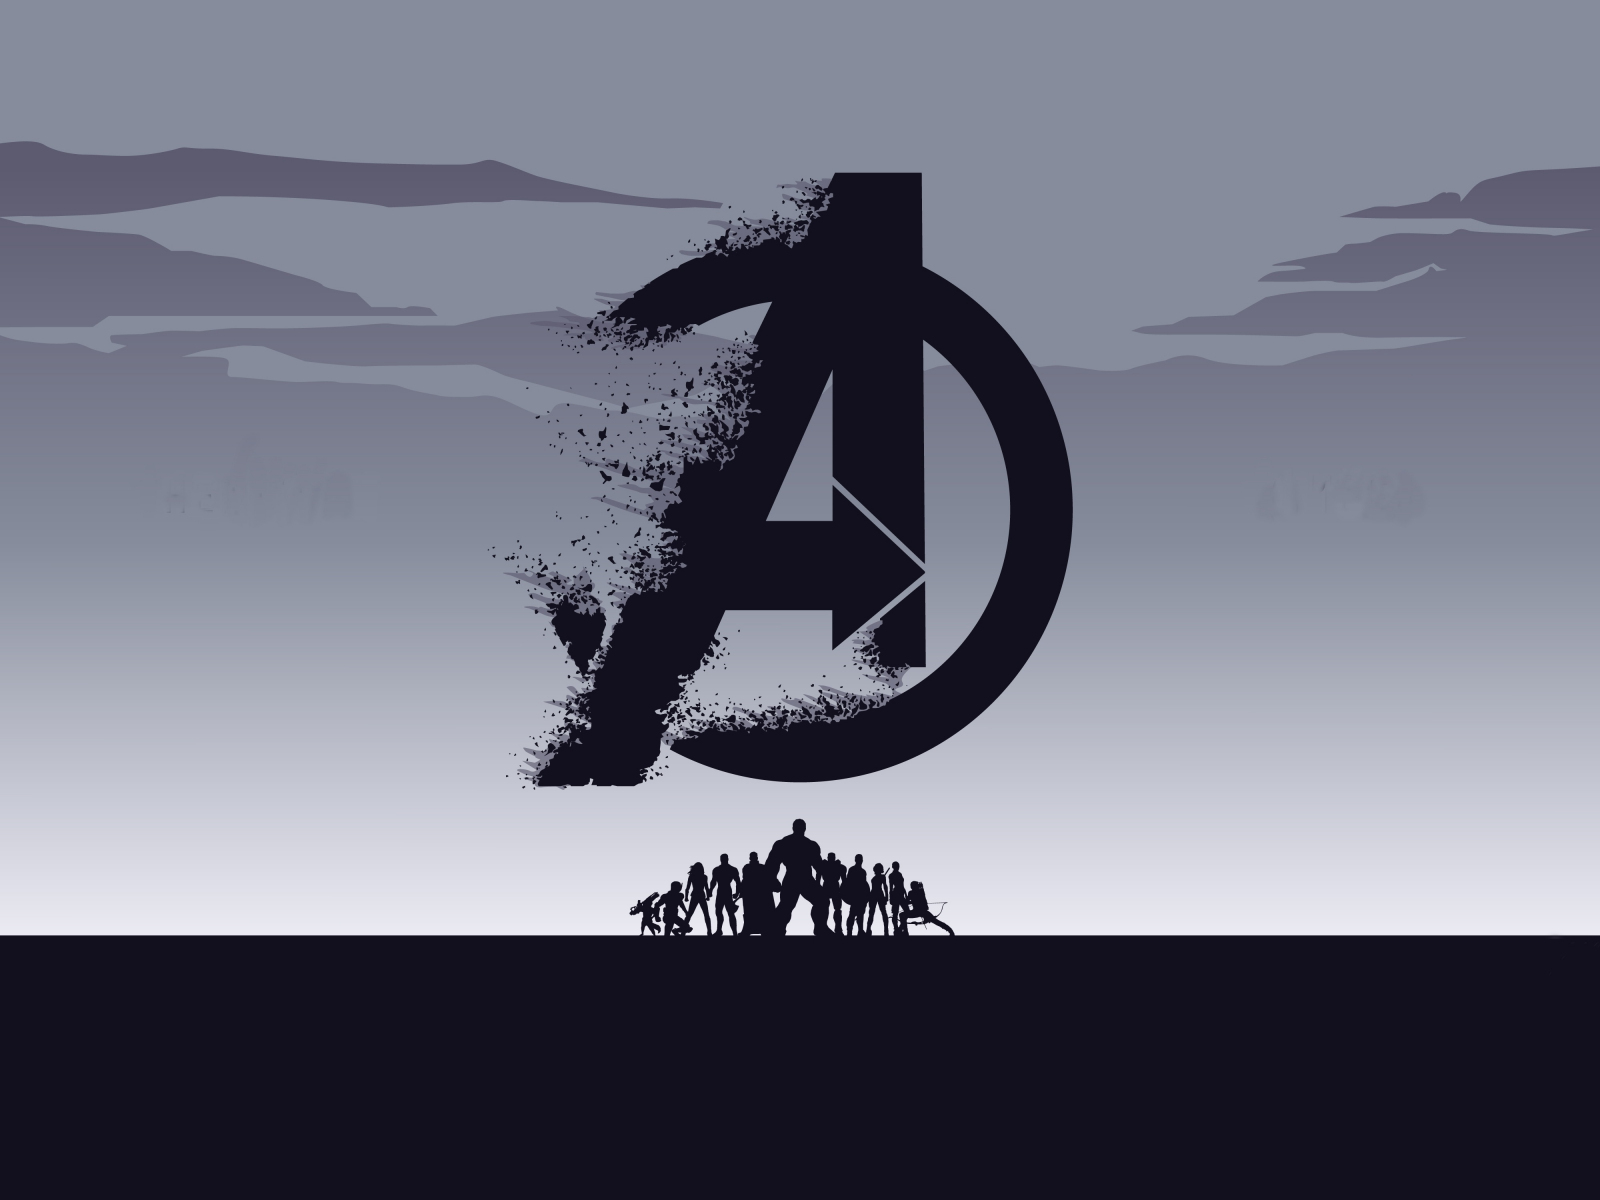 2019 movie, Avengers: Endgame, minimal, silhouette, art, 1600x1200 wallpaper